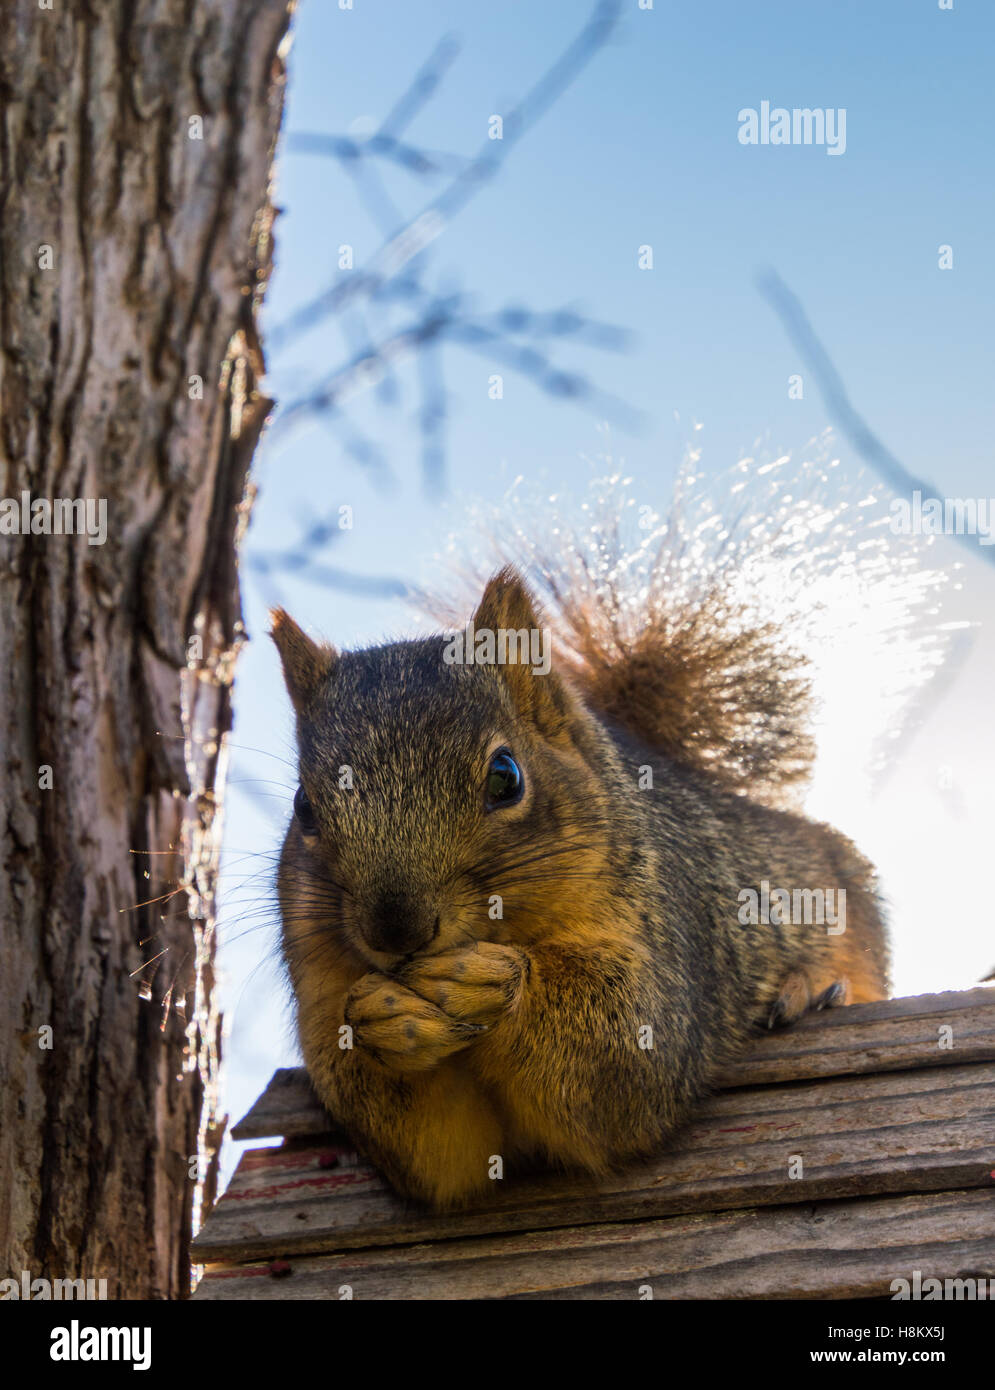 Nahaufnahme von roten Eichhörnchen knabbert an Samen, während auf einem verwitterten Vogelhaus Dach Hintergrundbeleuchtung mit geringen Schärfentiefe. Stockfoto